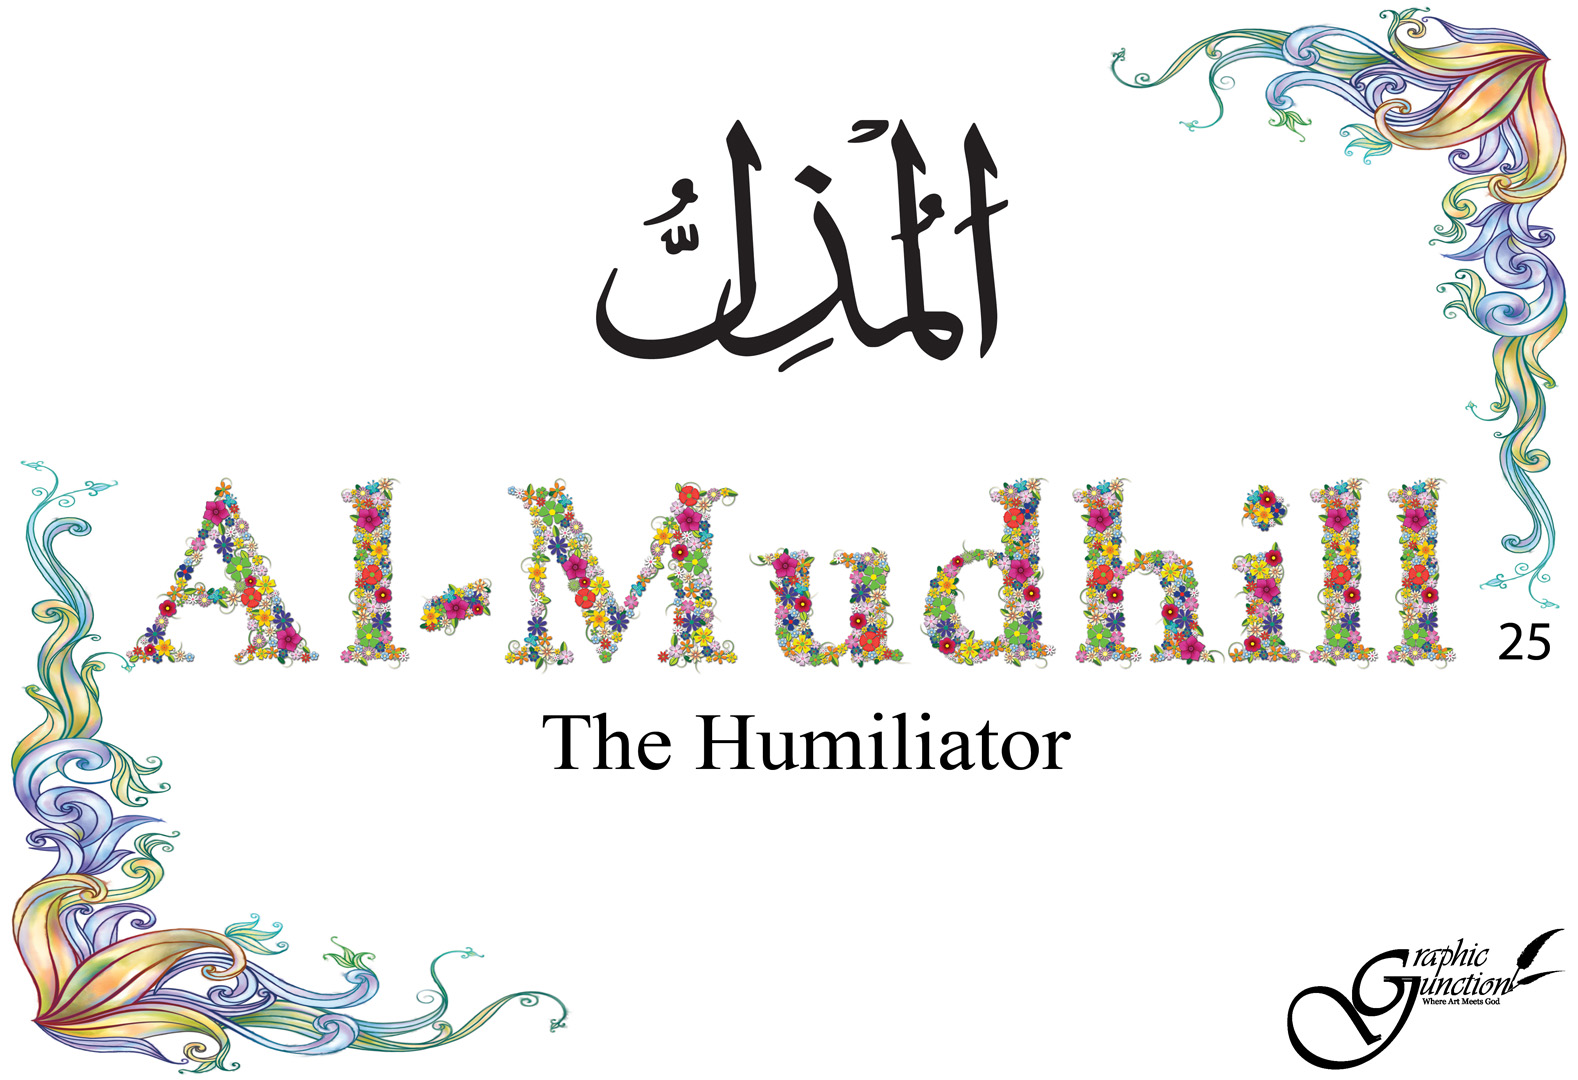 25: Al-Mudhill | GraphicJunction.com